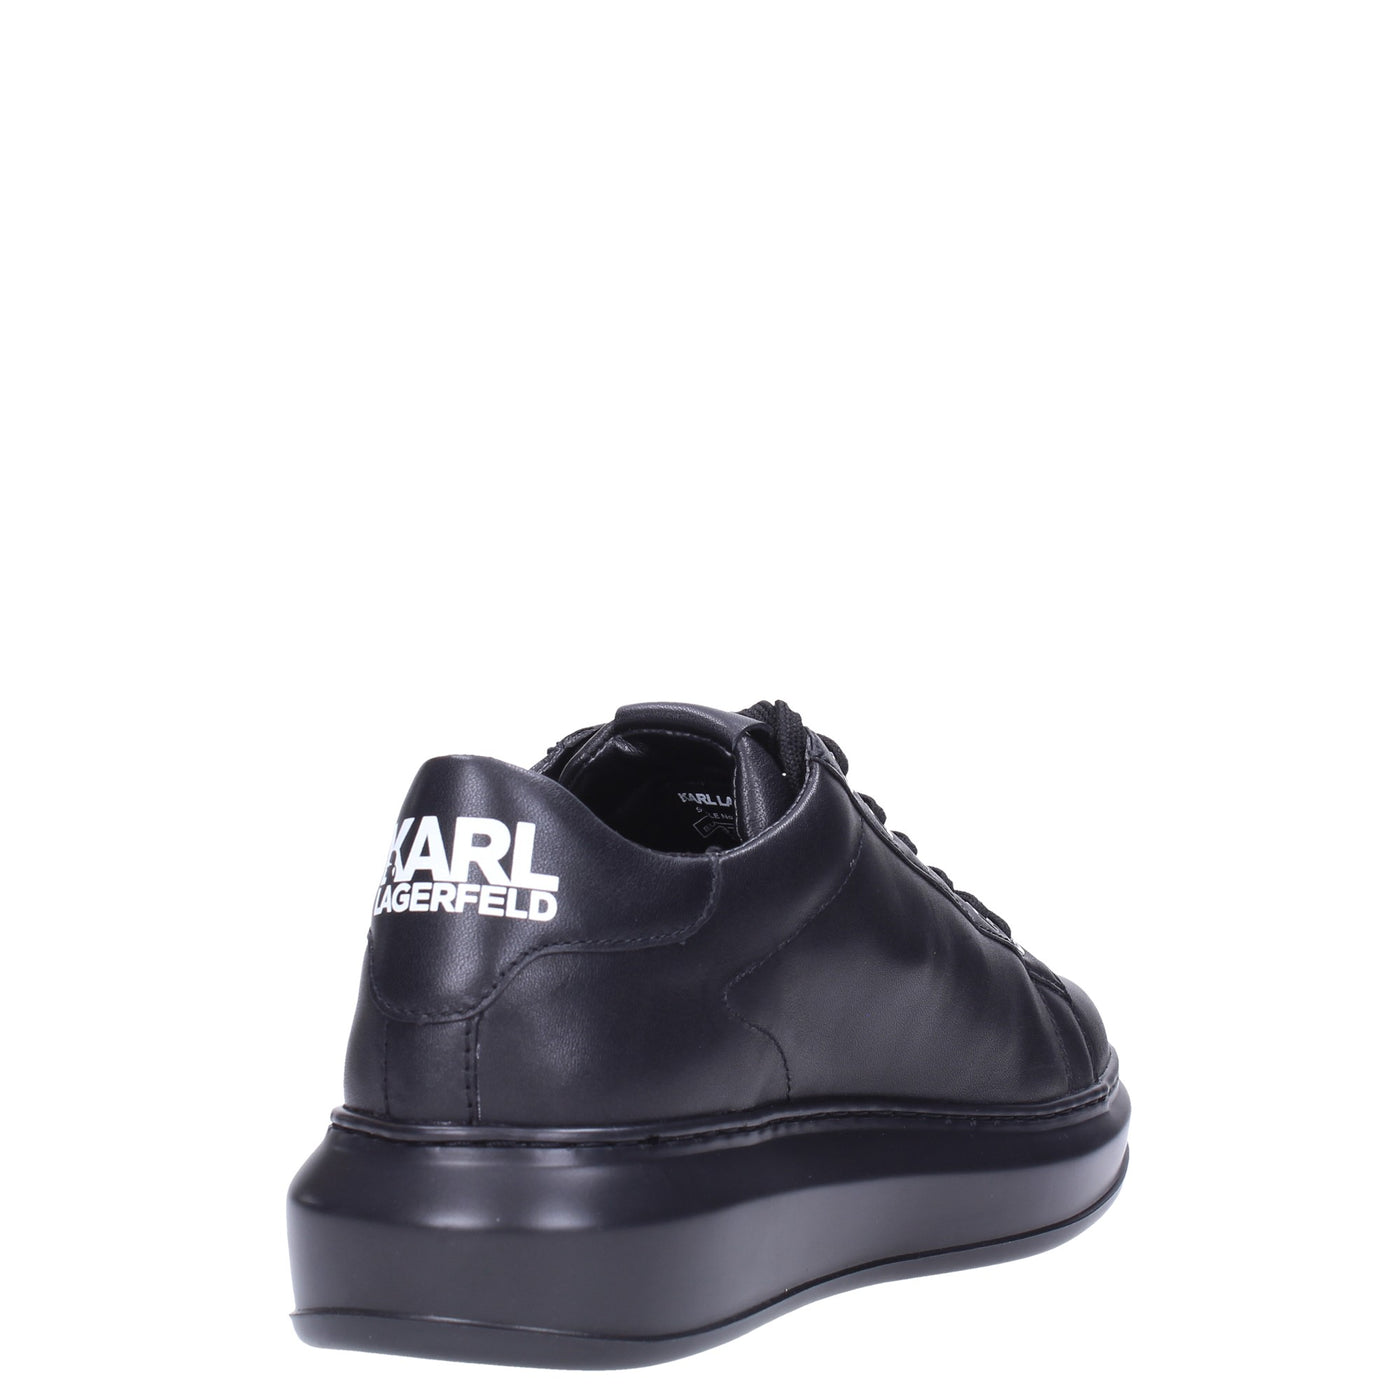 Karl lagerfeld Sneakers#colore_black